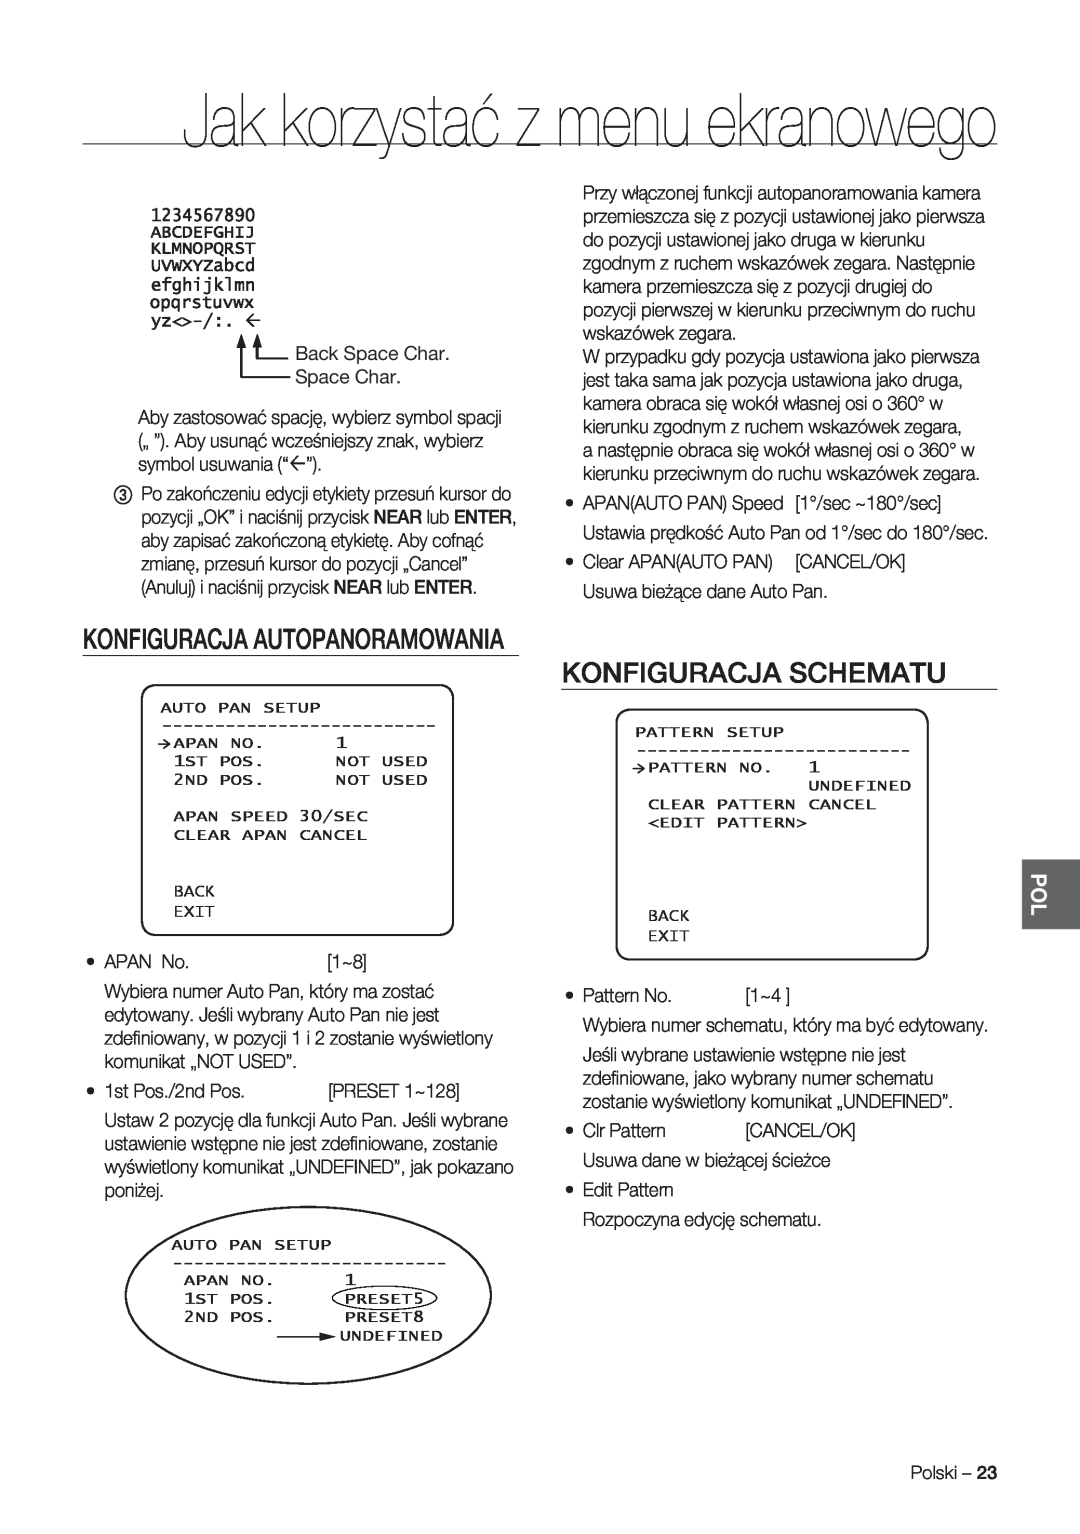 Samsung SCC-C7478P manual Konfiguracja Schematu, Konfiguracja Autopanoramowania, Jak korzystać z menu ekranowego 